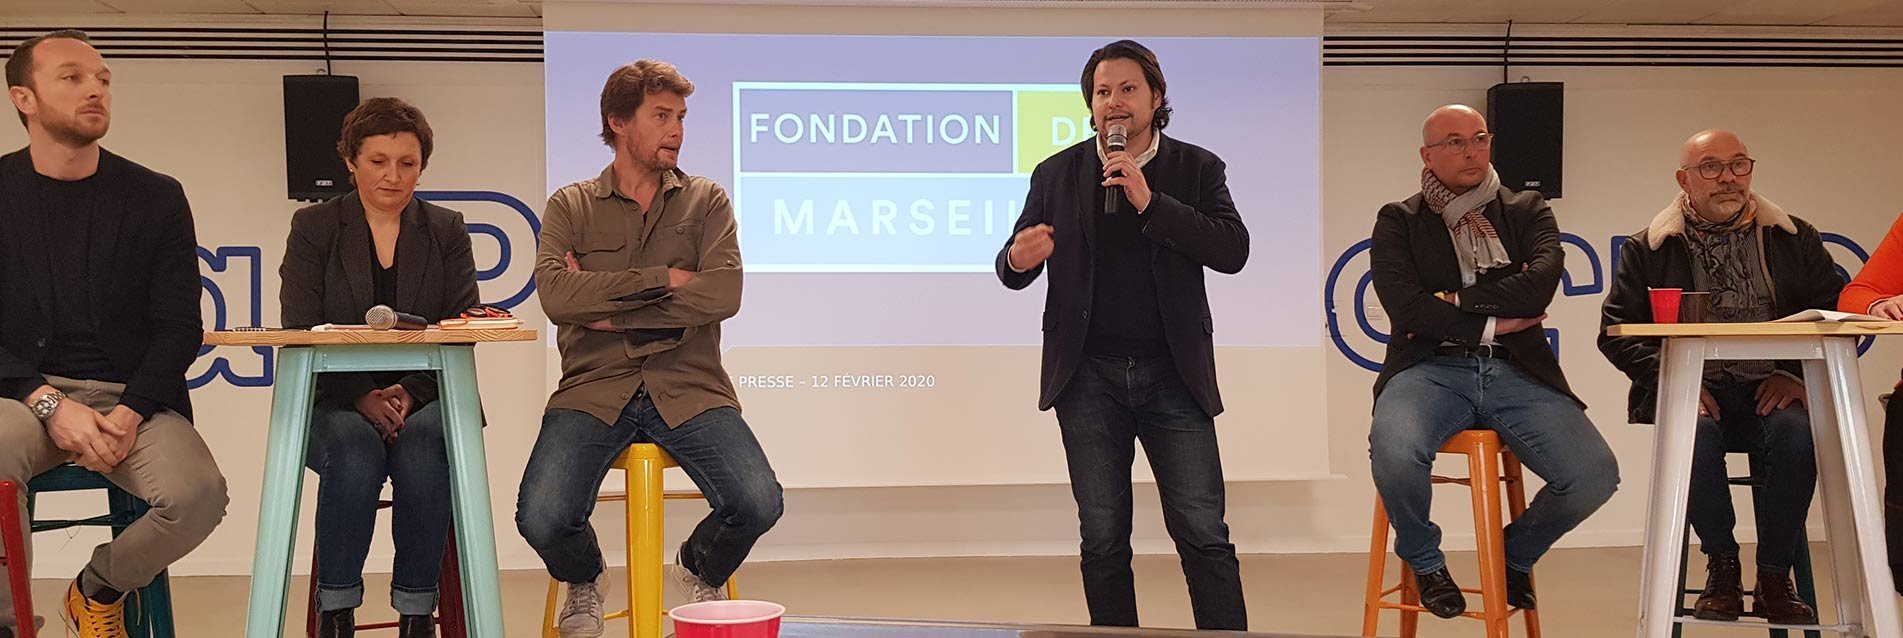 La Fondation de Marseille est née